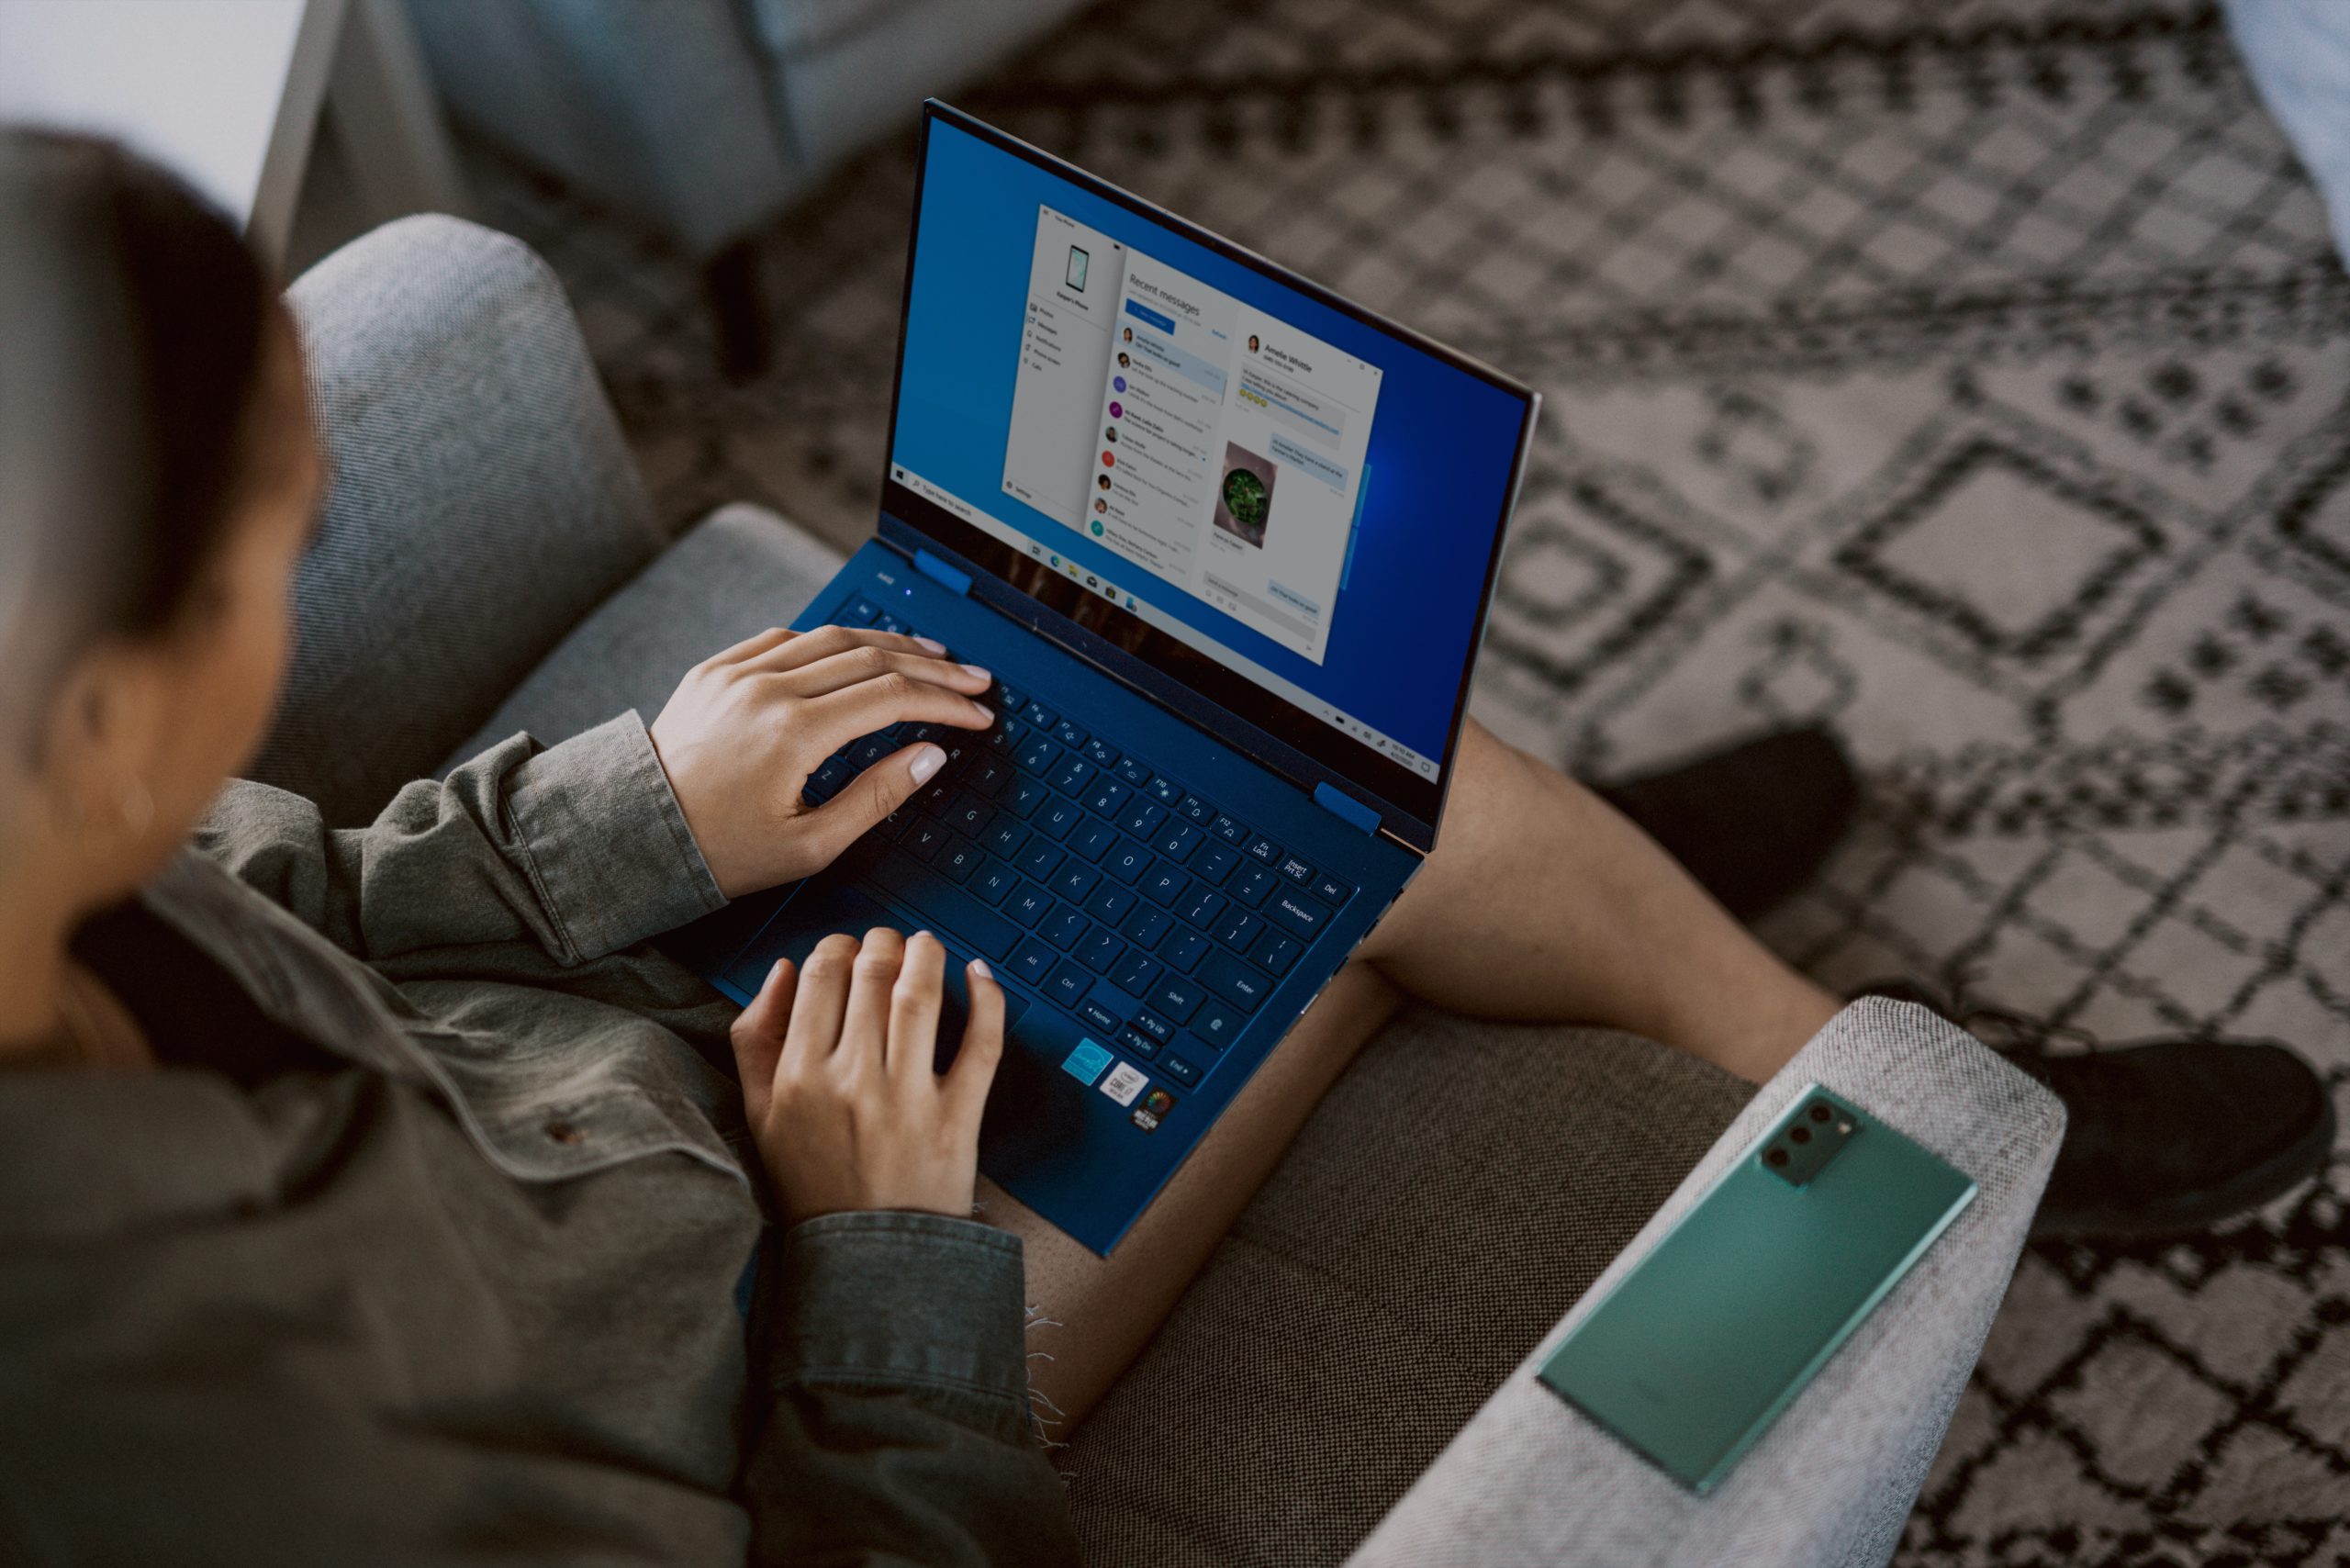 Zu sehen ist eine Frau mit einem Laptop auf dem Schoß. Bald kann darauf das neue Funktionsupdate Windows 10 21H1 installiert werden. Bild: Unsplash/Windows